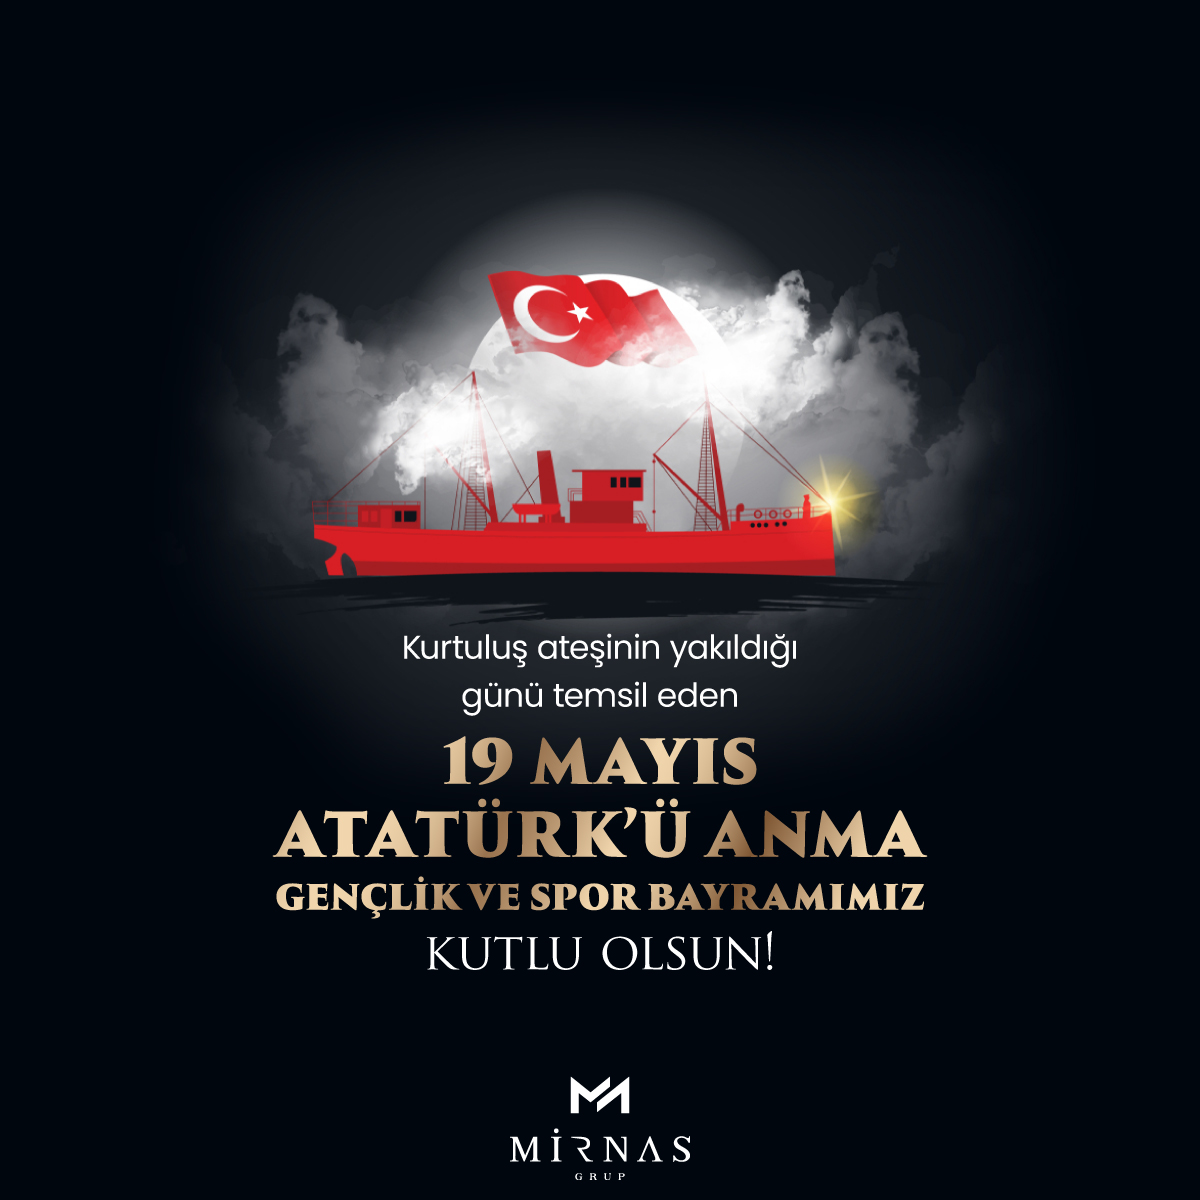 Kurtuluş ateşinin yakıldığı ve aydınlık bir geleceğe olan inancın kuvvetlendiği günü temsil eden 19 Mayıs Atatürk'ü Anma, Gençlik ve Spor Bayramımız kutlu olsun.

#MirnasGrup #MirnasBahçeşehir #19Mayıs #AtatürküAnmaGençlikveSporBayramı